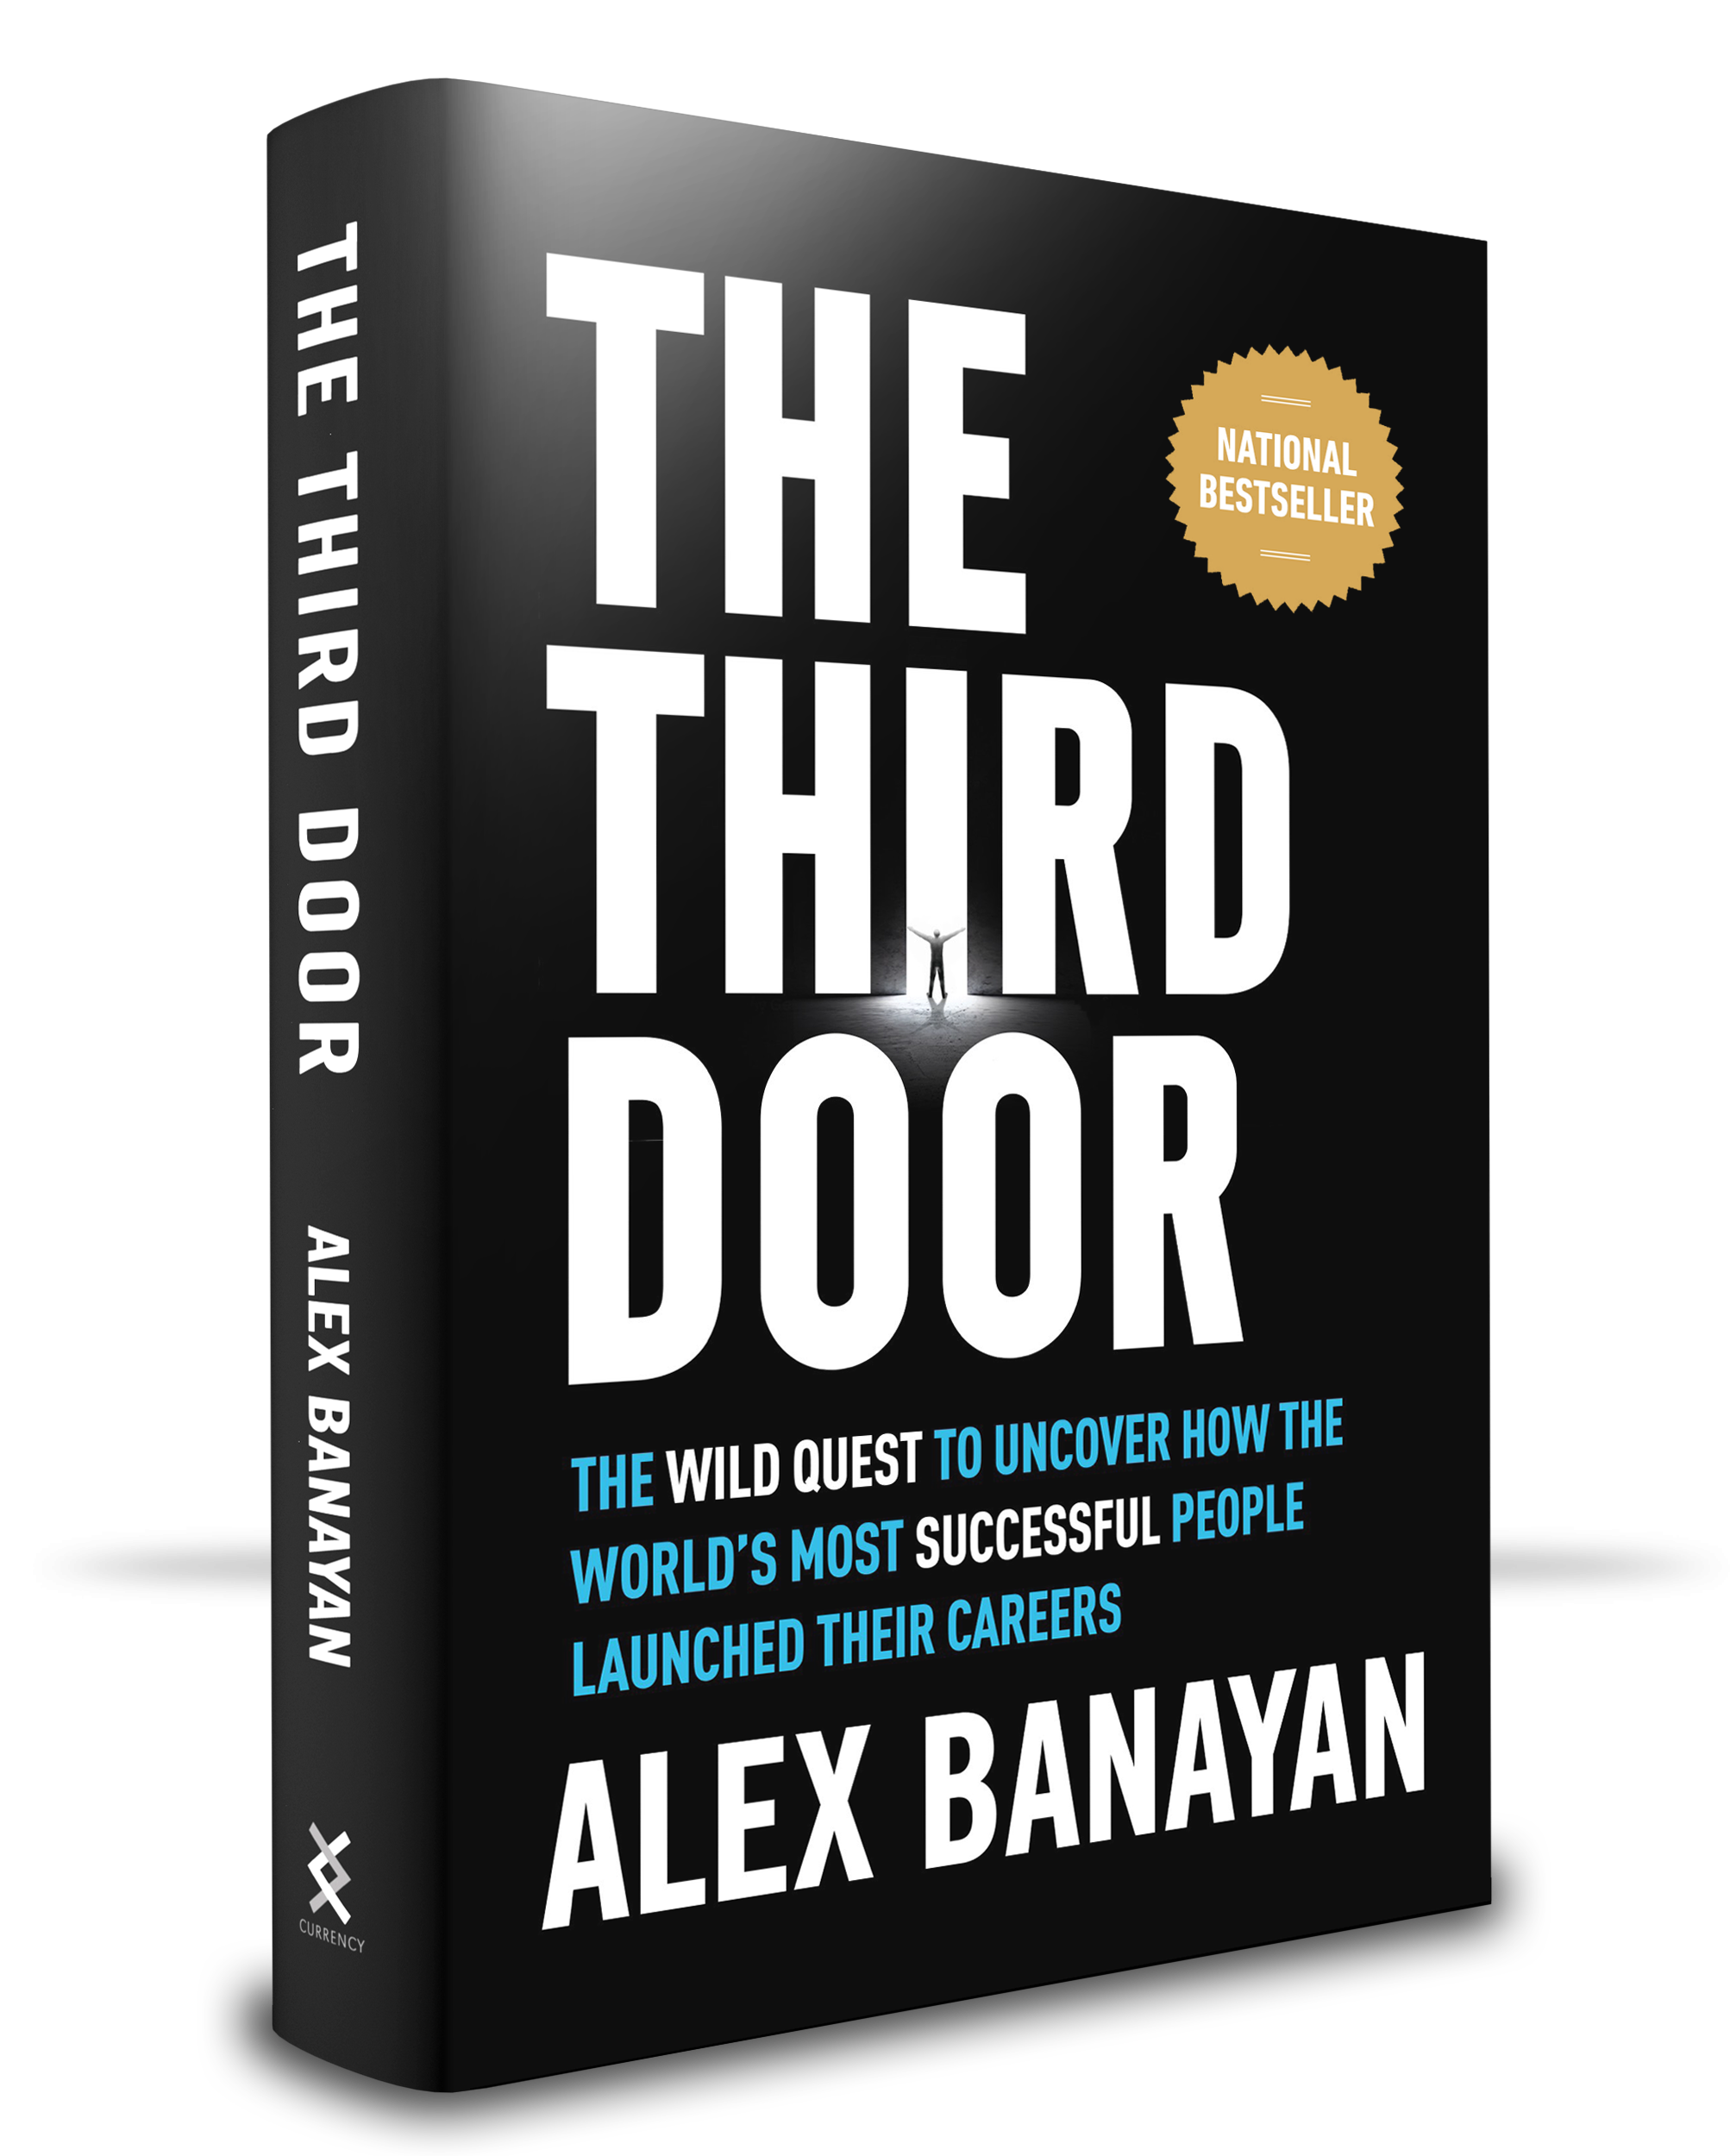 Third-Door-book-cover-2019